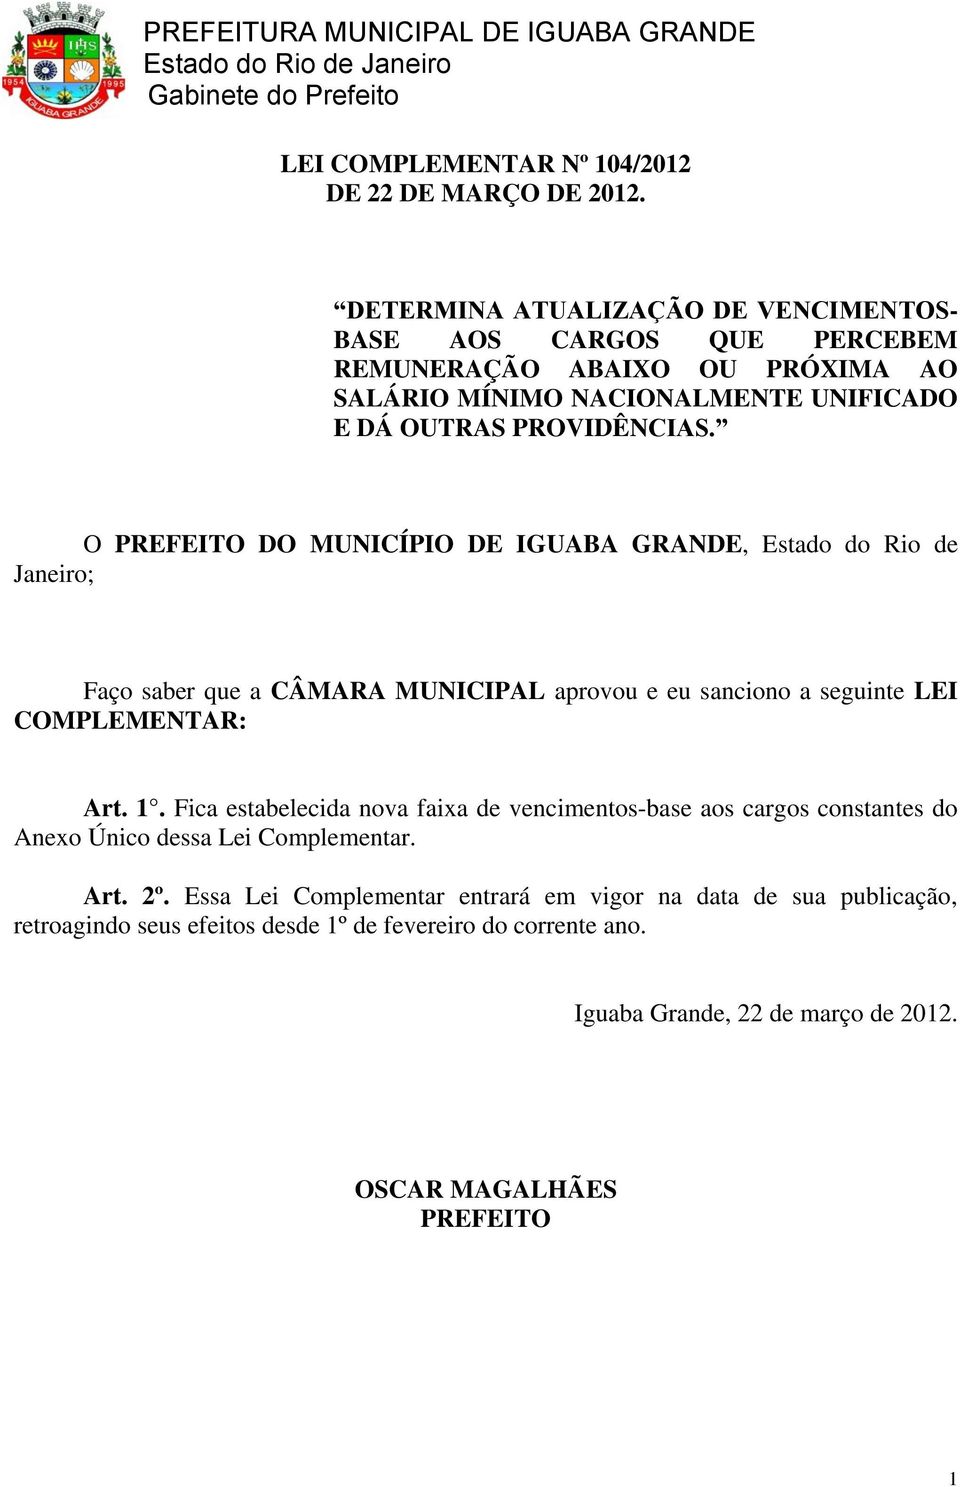 O PREFEITO DO MUNICÍPIO DE IGUABA GRANDE, Estado do Rio de Janeiro; Faço saber que a CÂMARA MUNICIPAL aprovou e eu sanciono a seguinte LEI COMPLEMENTAR: Art. 1.